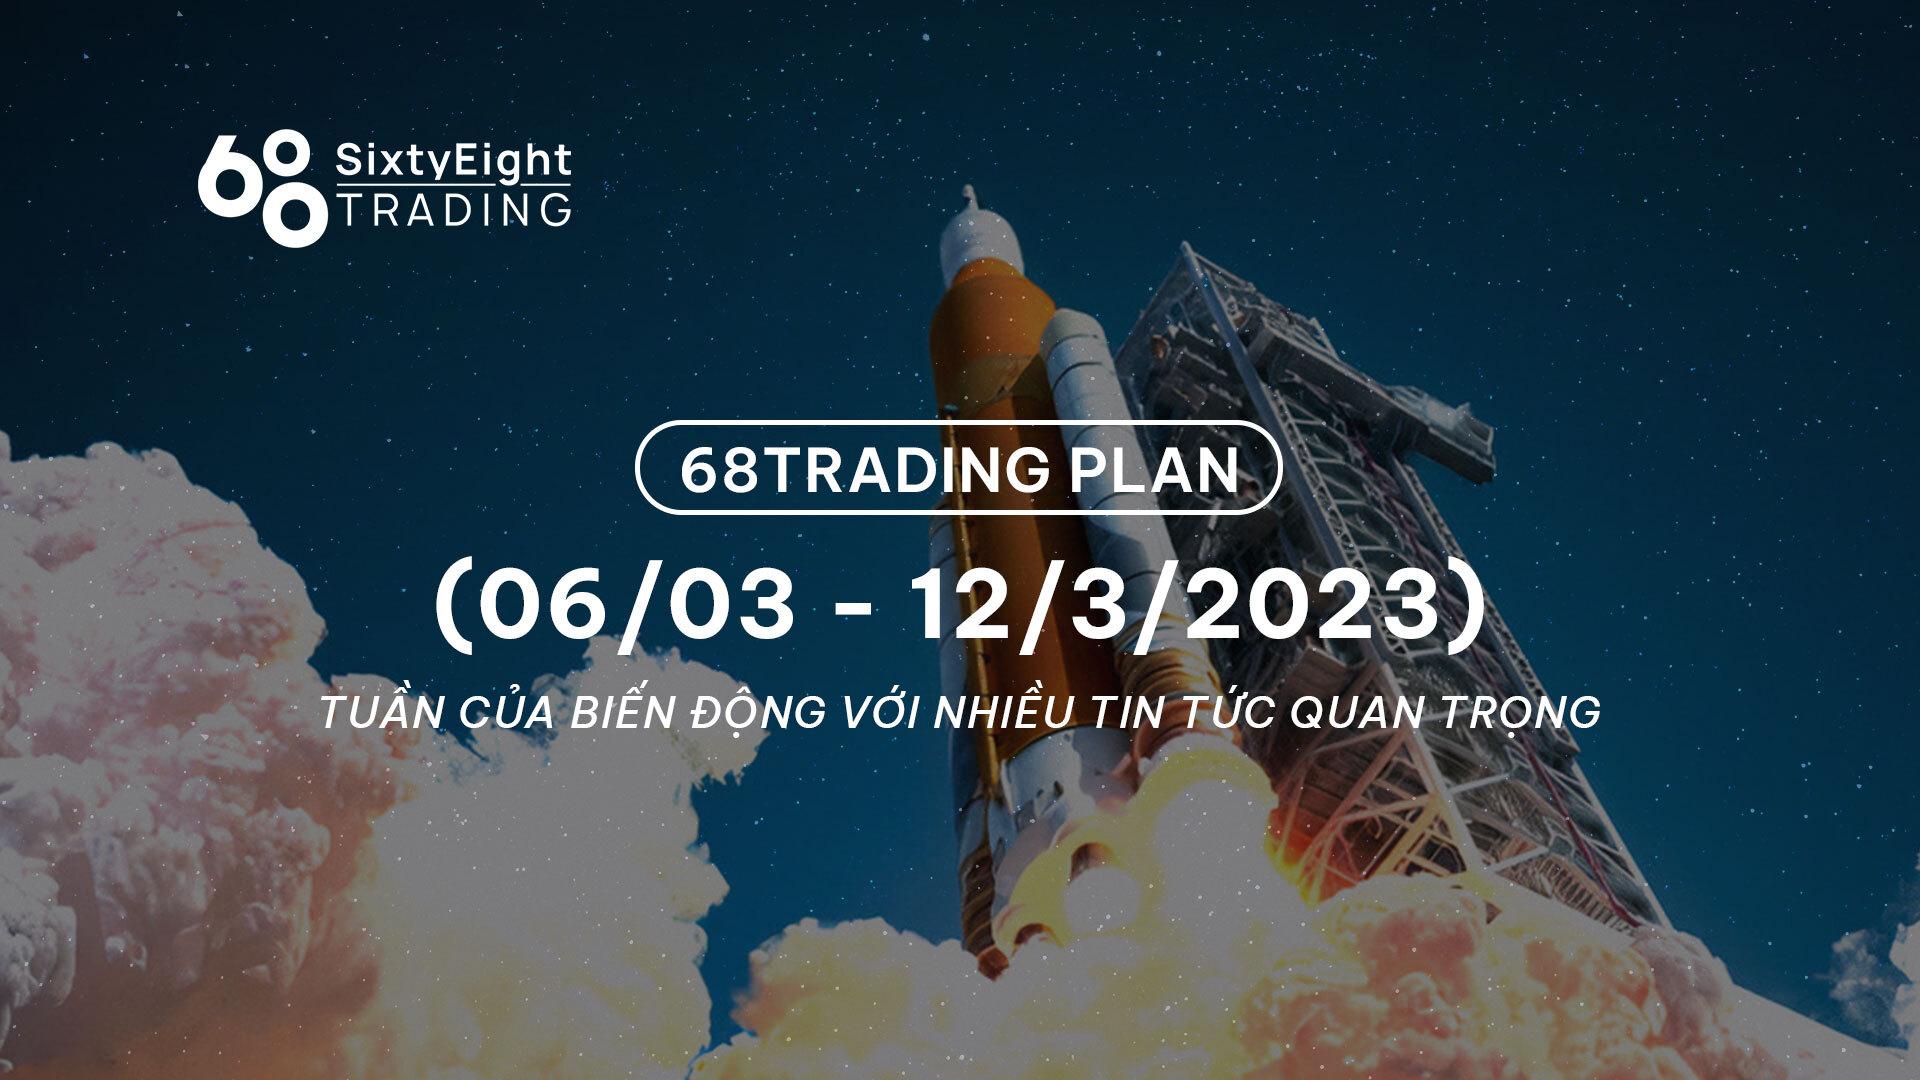 68-trading-plan-0603-12032023-tuan-cua-bien-dong-voi-nhieu-tin-tuc-quan-trong